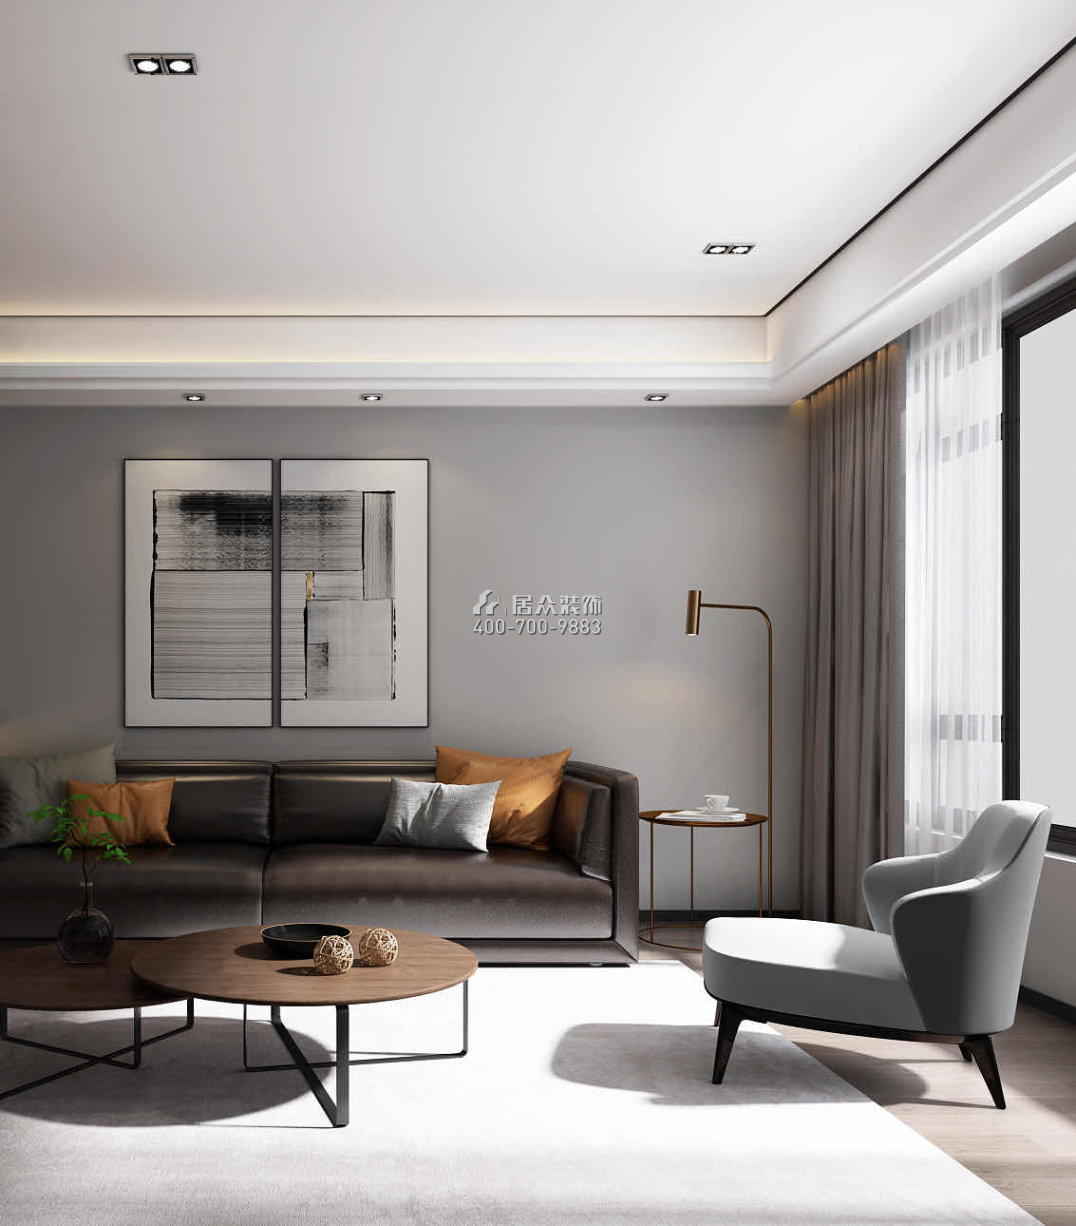 德景園155平方米現代簡約風格平層戶型客廳裝修效果圖